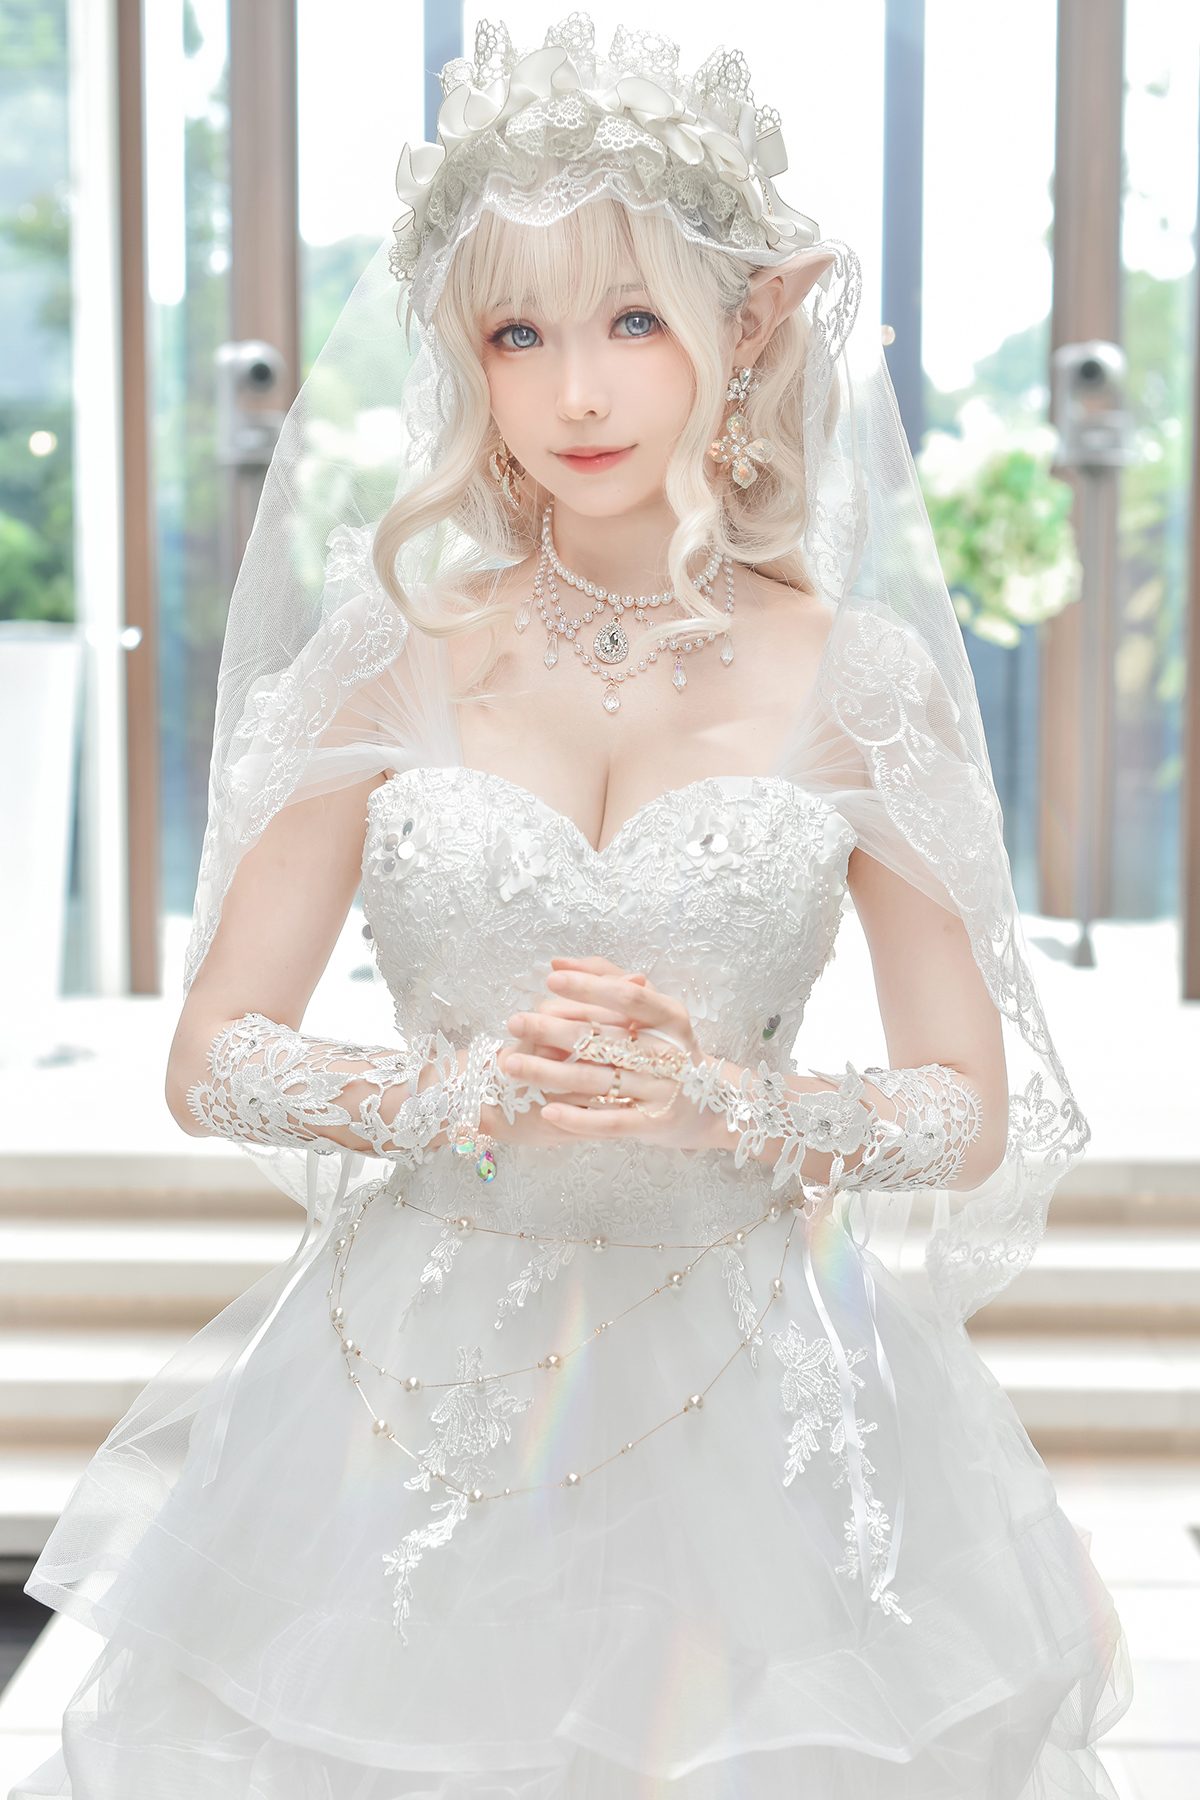 Coser@Ely_eee ElyEE子 Bride And Lingerie 0025 1804521639.jpg